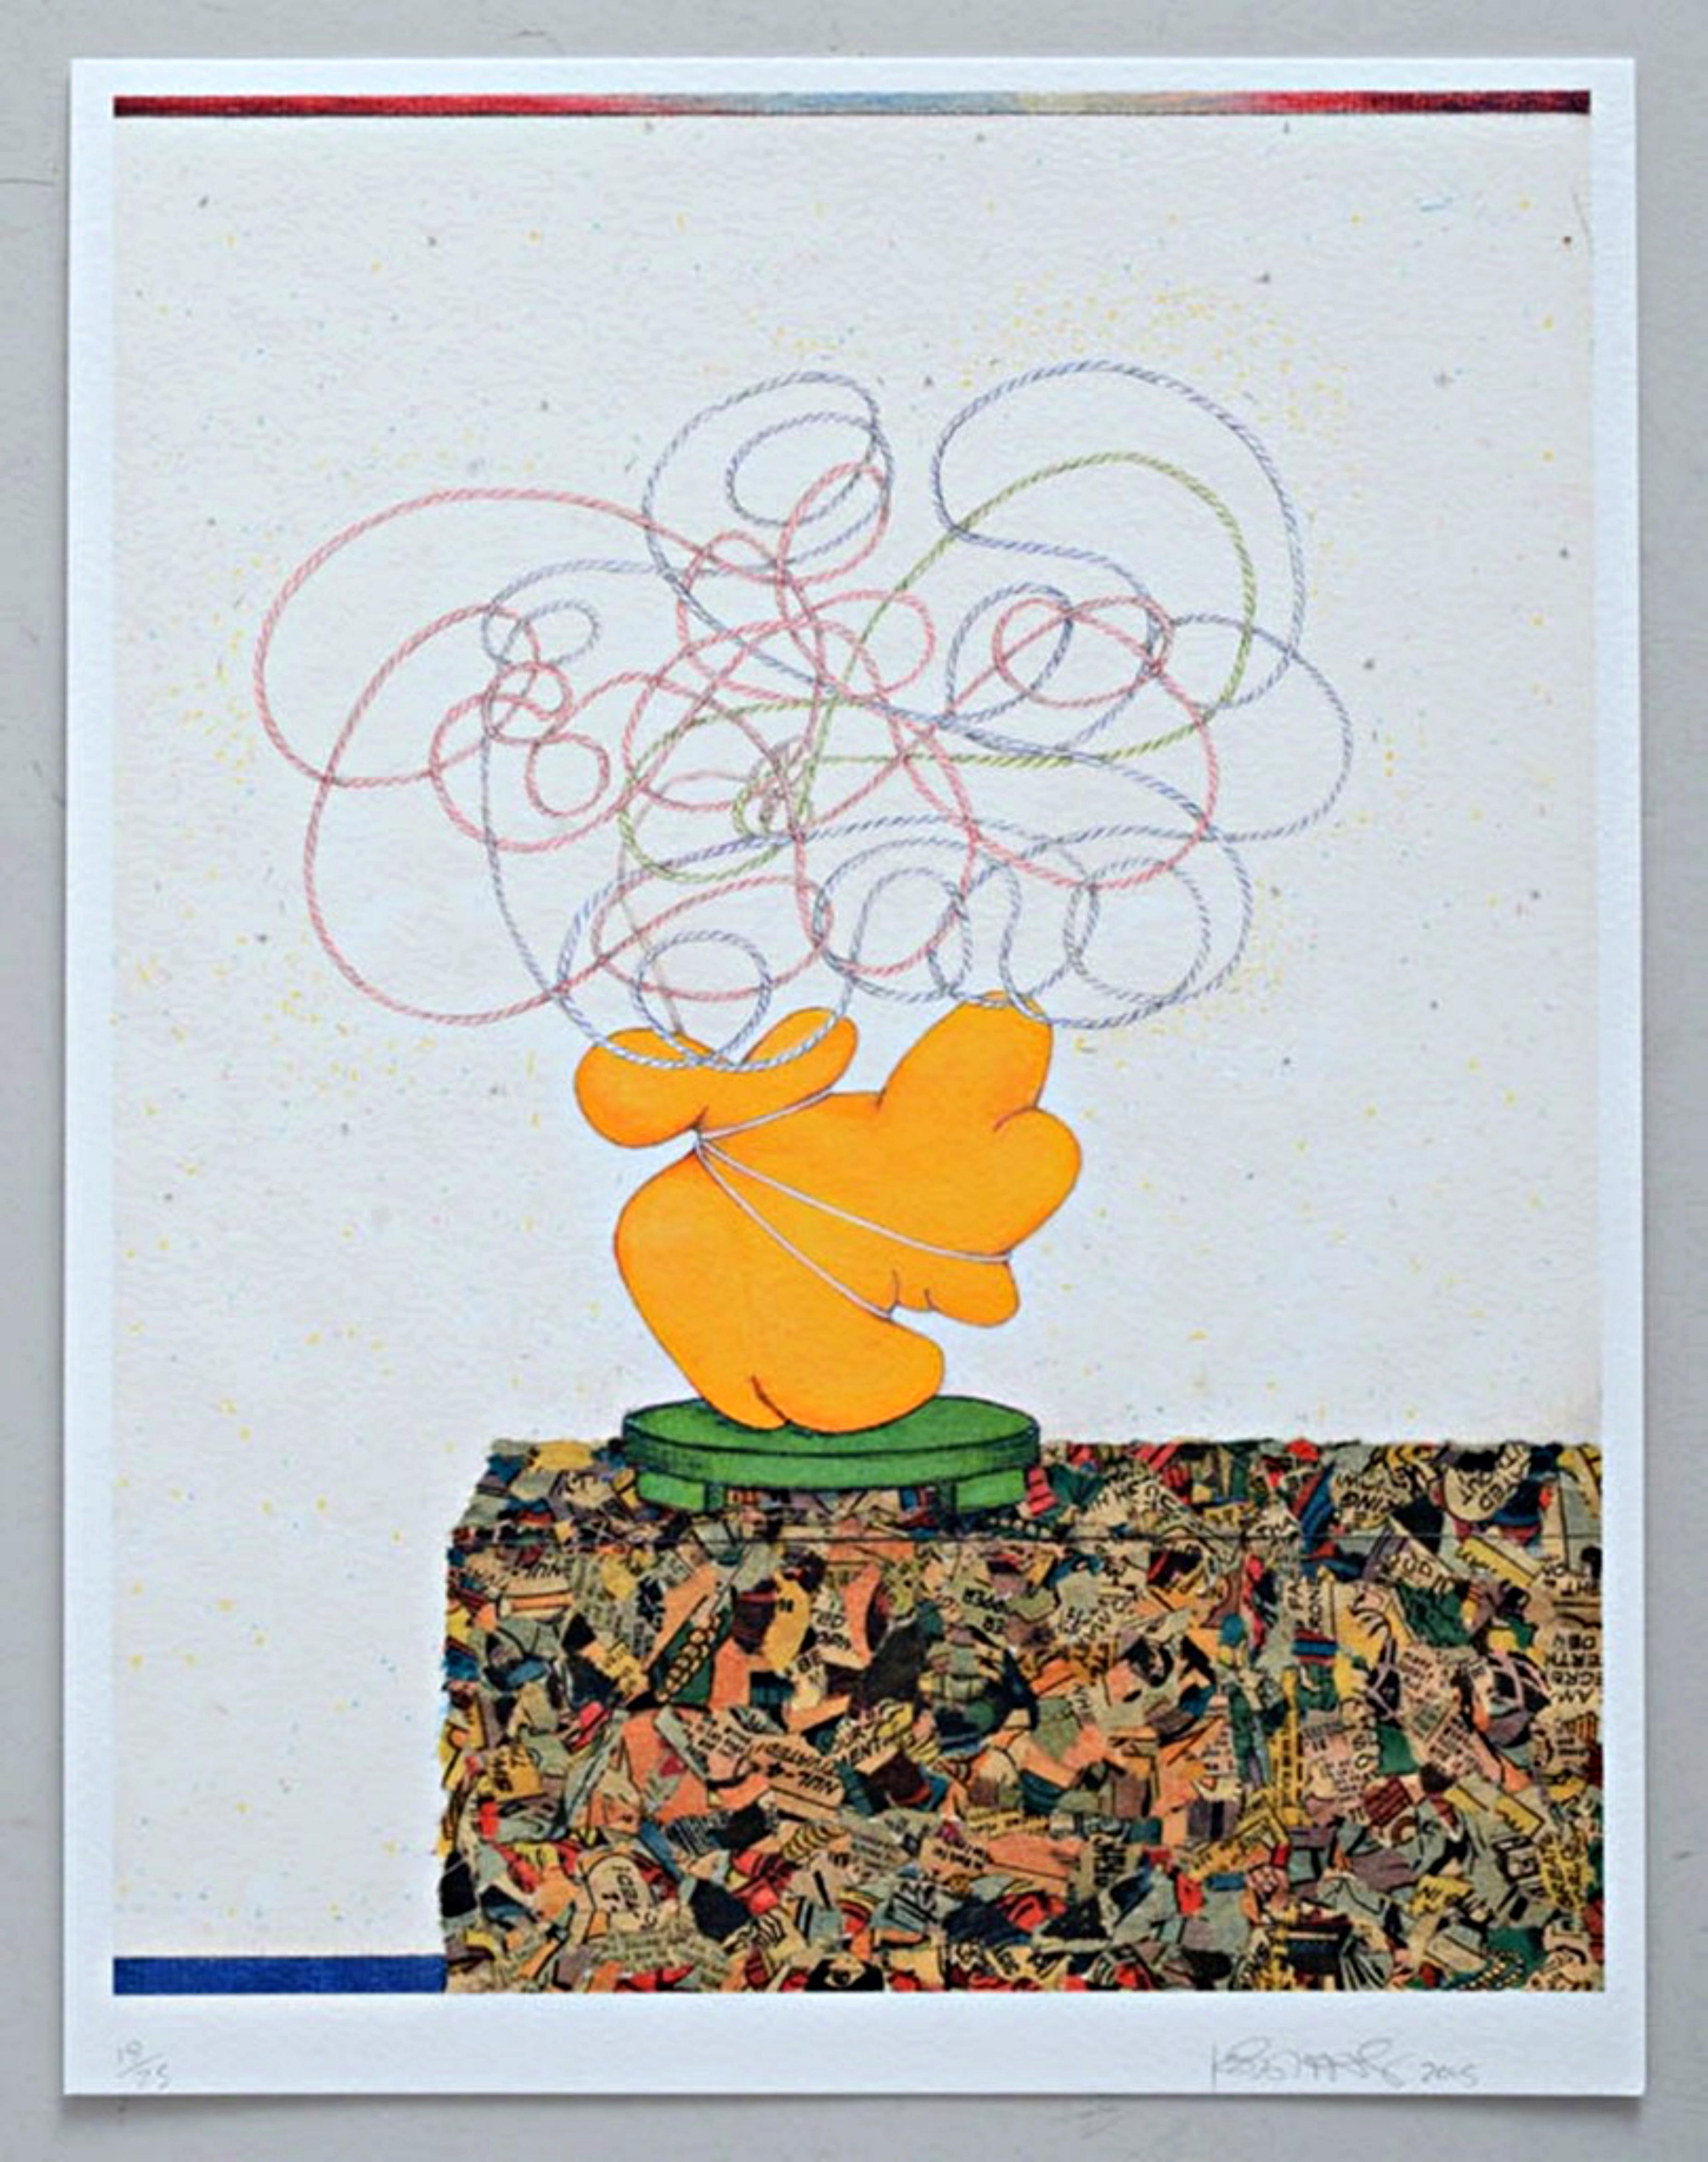 Abstract Print Kathy Butterly - Impression sans titre d'un objet for Objects for Objects abstrait, tirée du Portfolio de l'école de la Terre